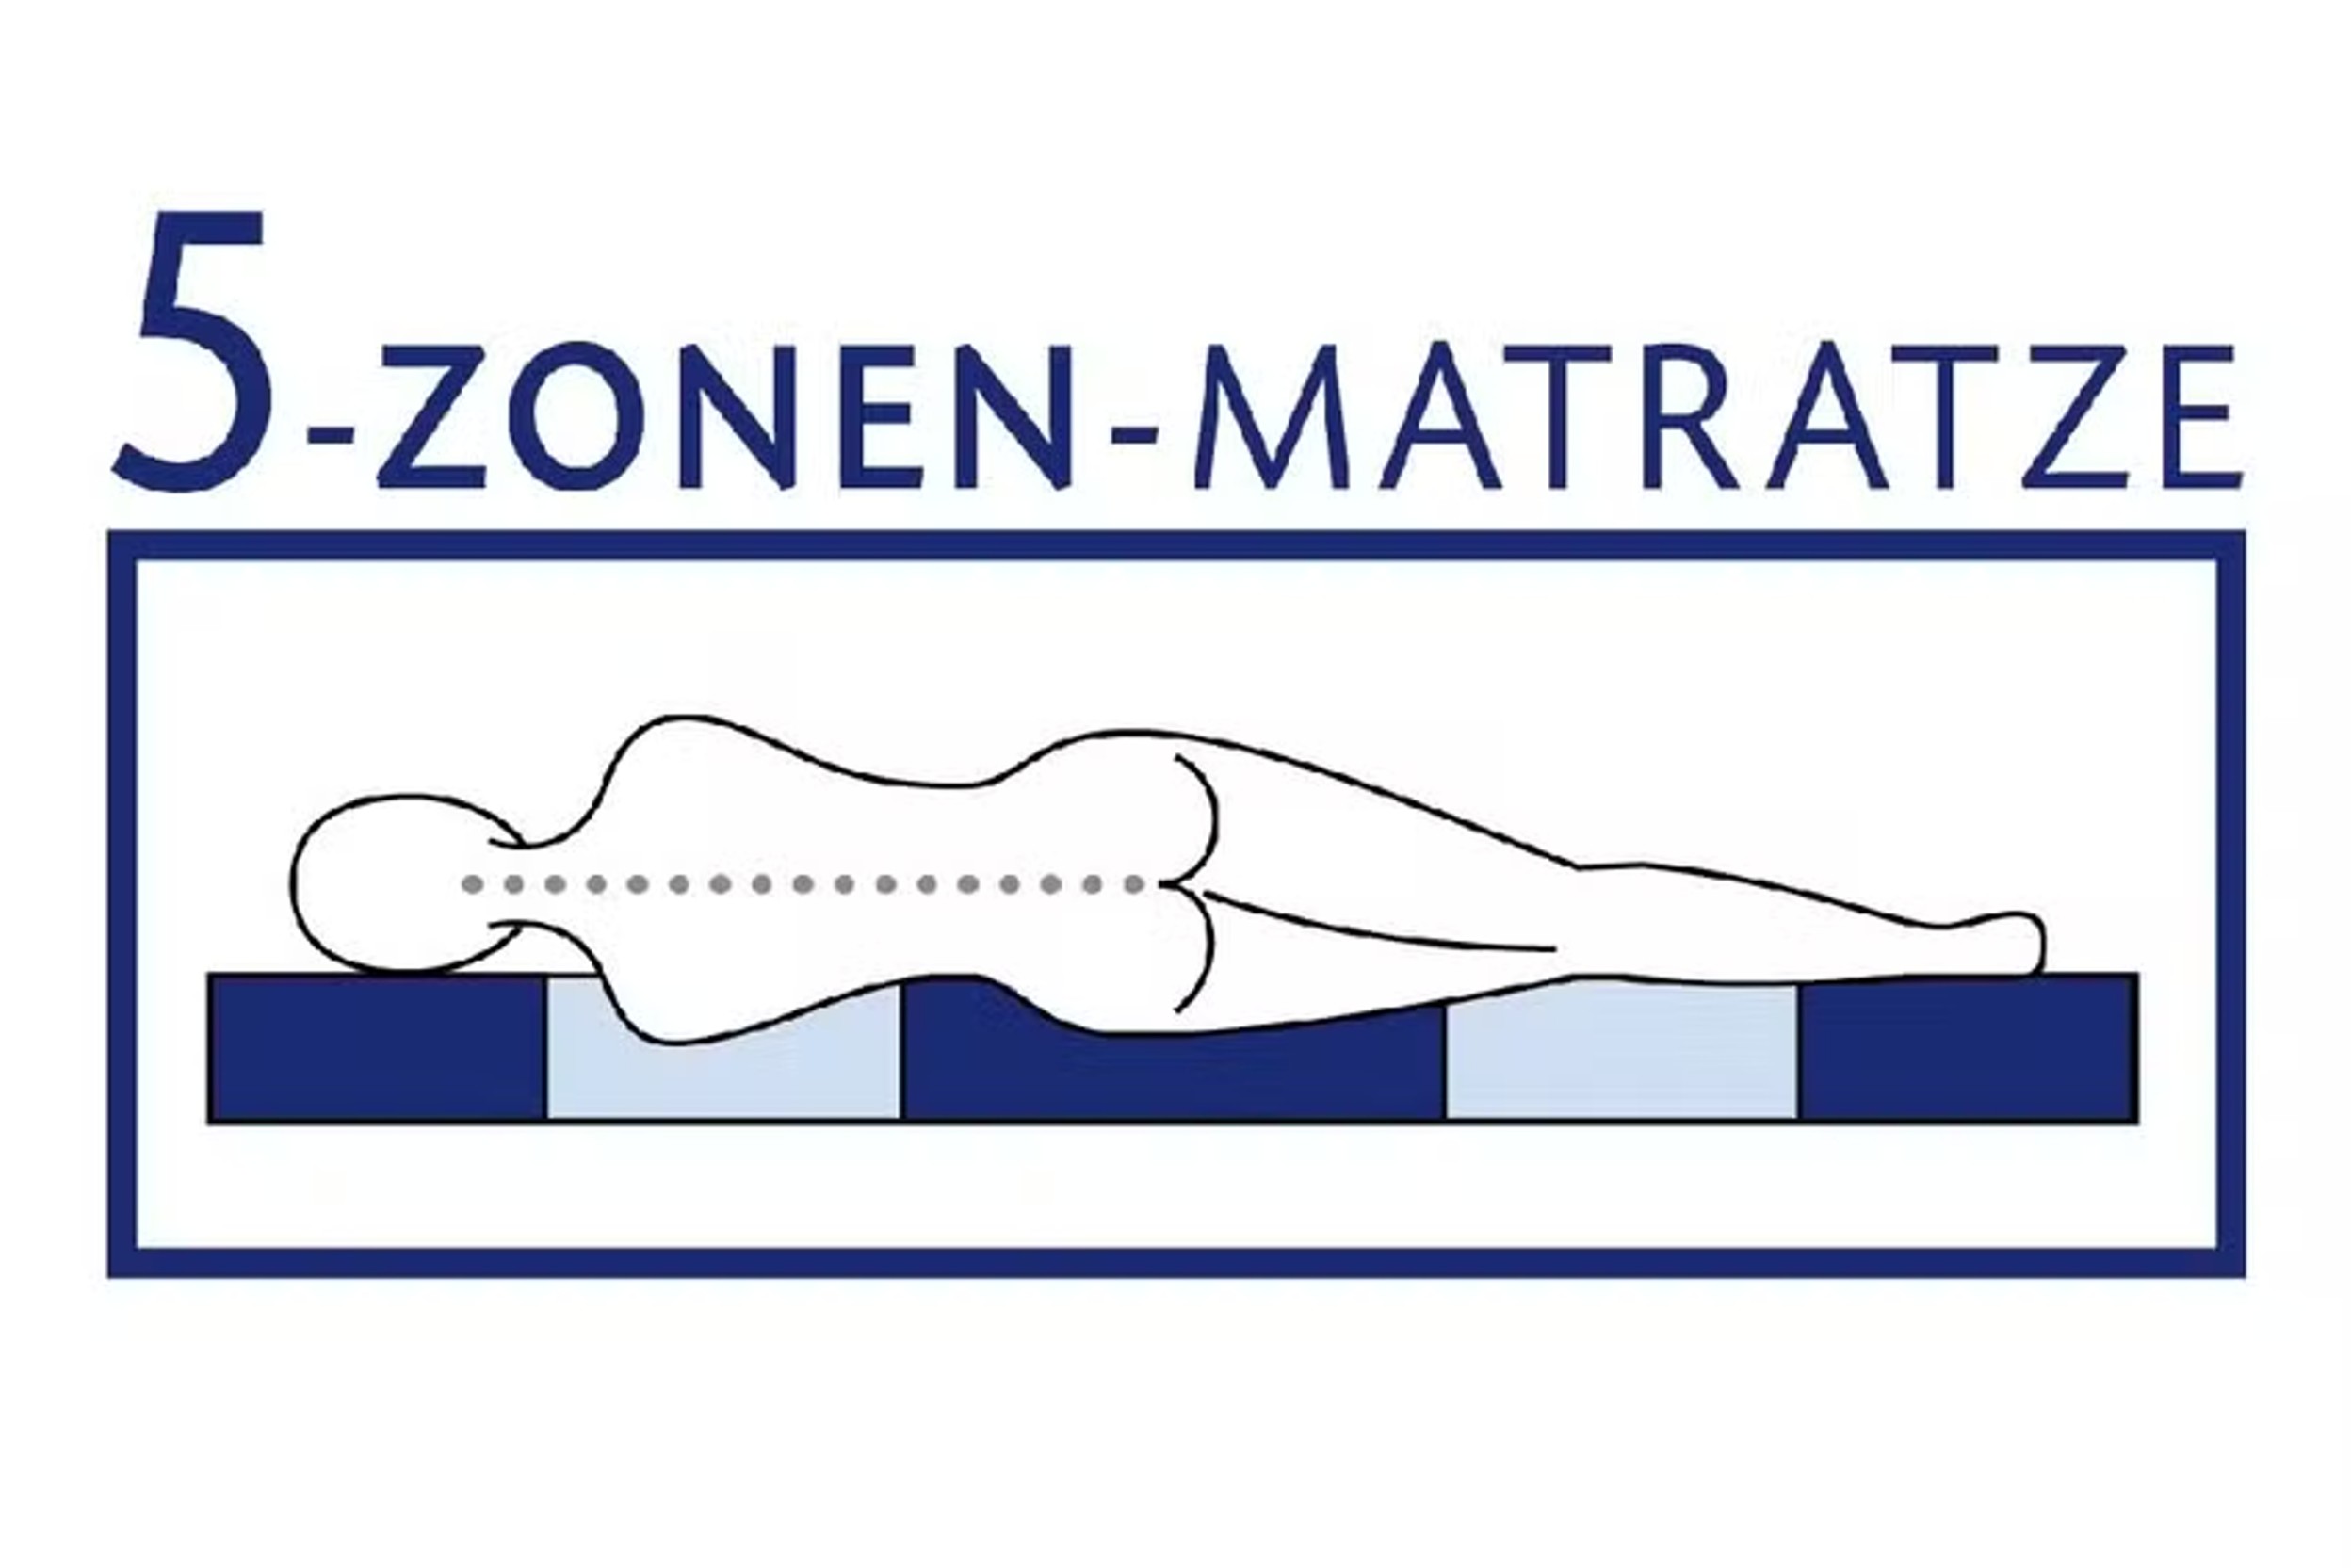 Zonen bei Matratzen: Abbildung der Liegezonen bei einer 5-Zonen-Matratze, die im home24-Onlineshop erhätlich ist.